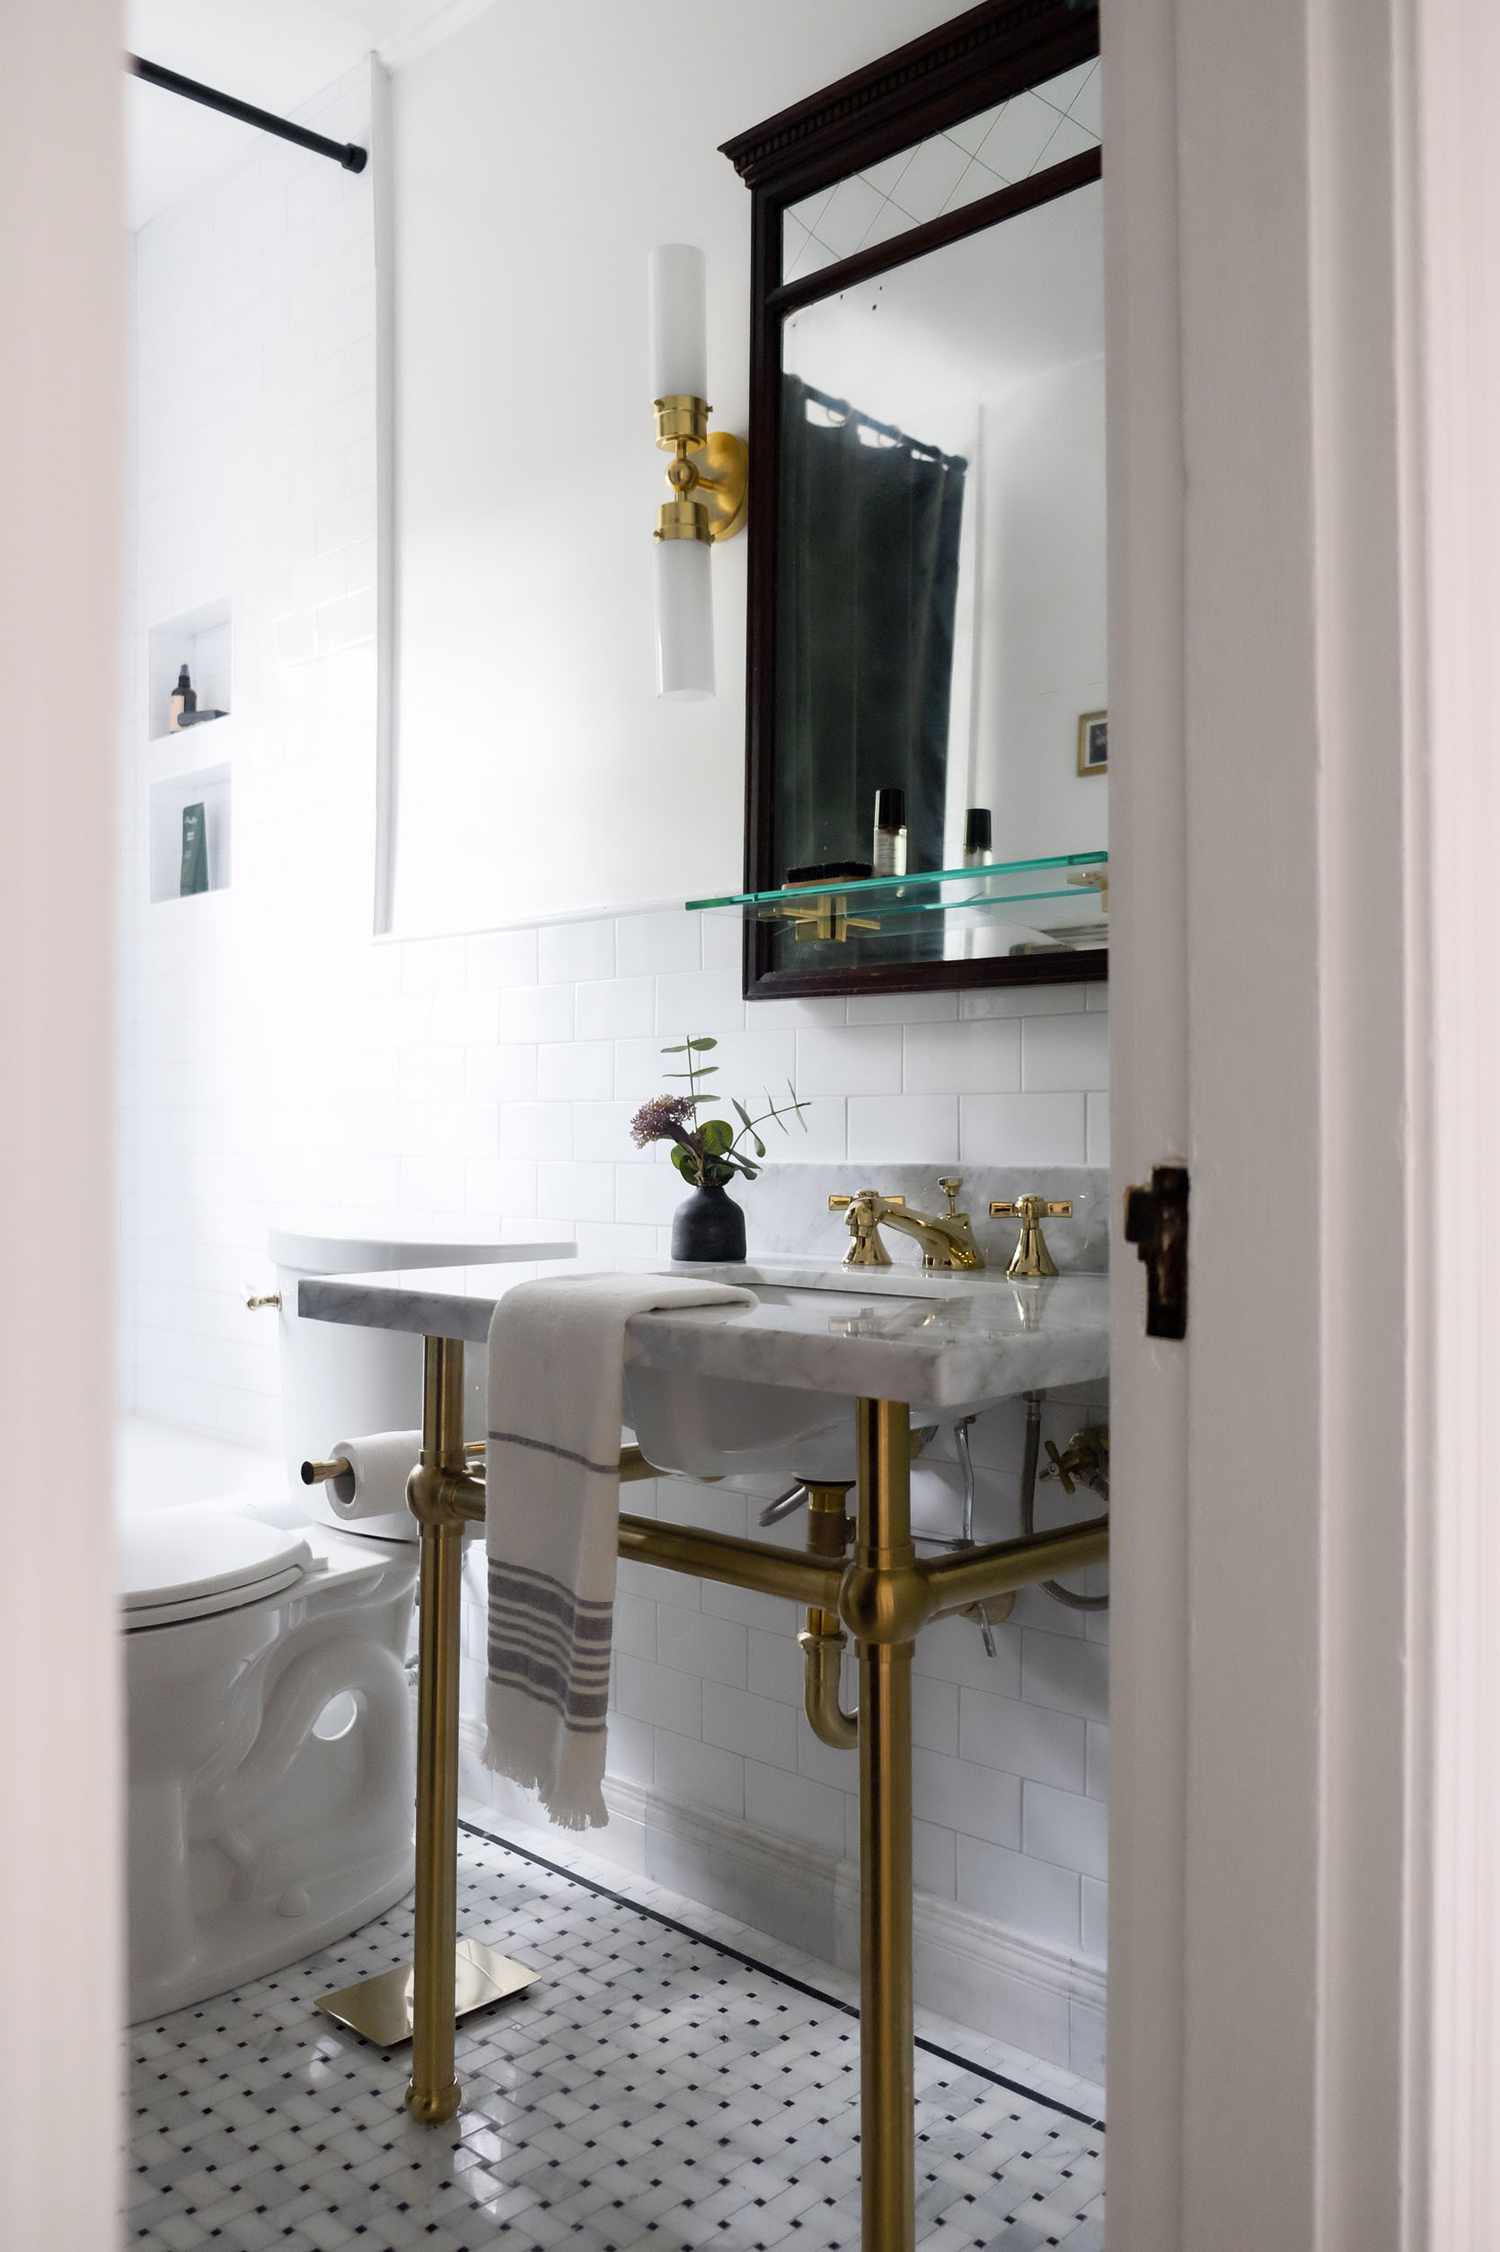 Salle de bain contemporaine blanche avec des accents or et noir